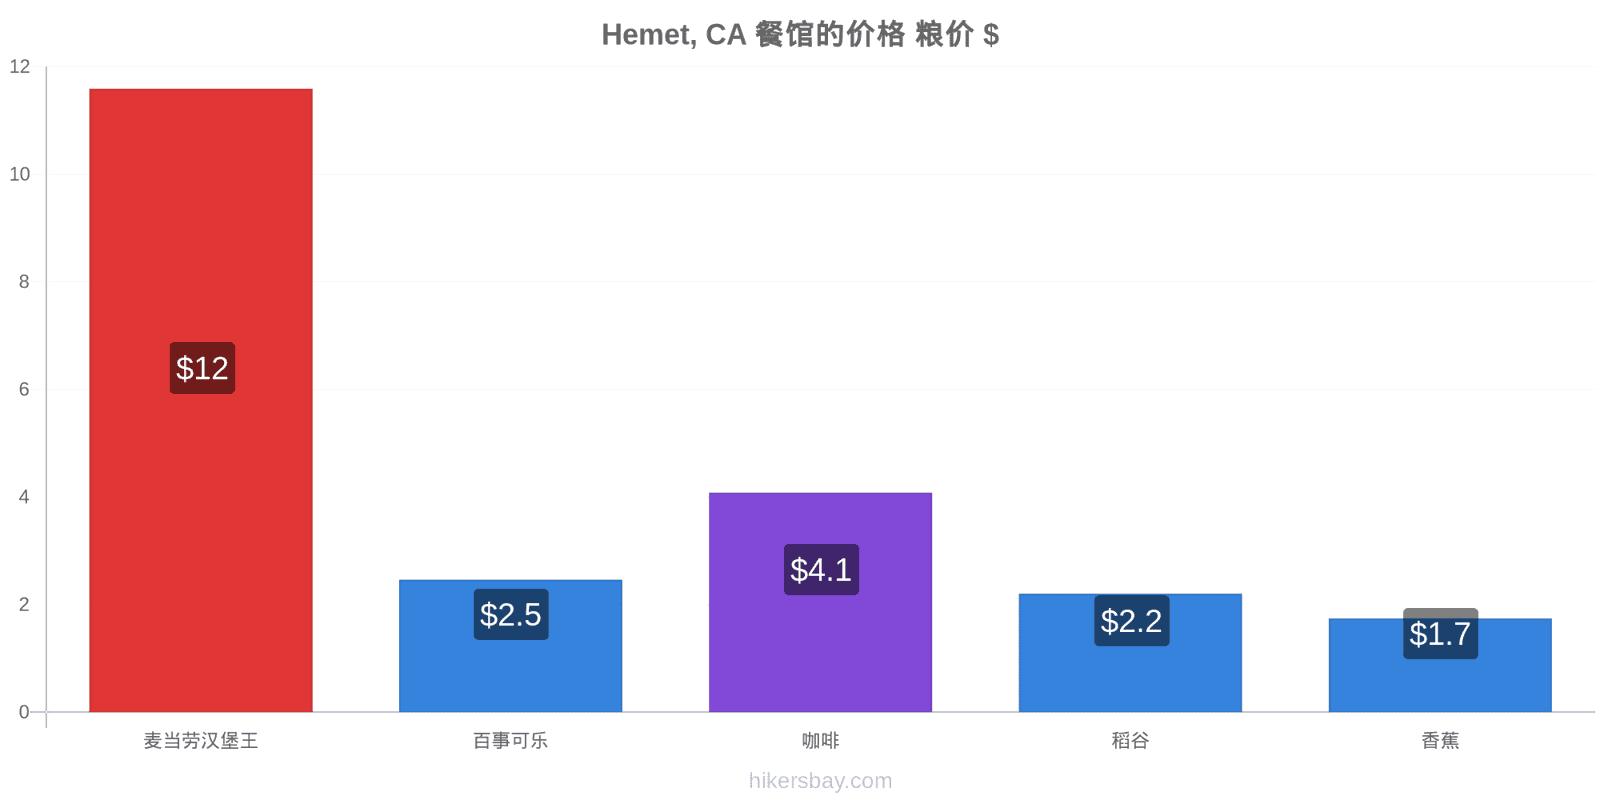 Hemet, CA 价格变动 hikersbay.com